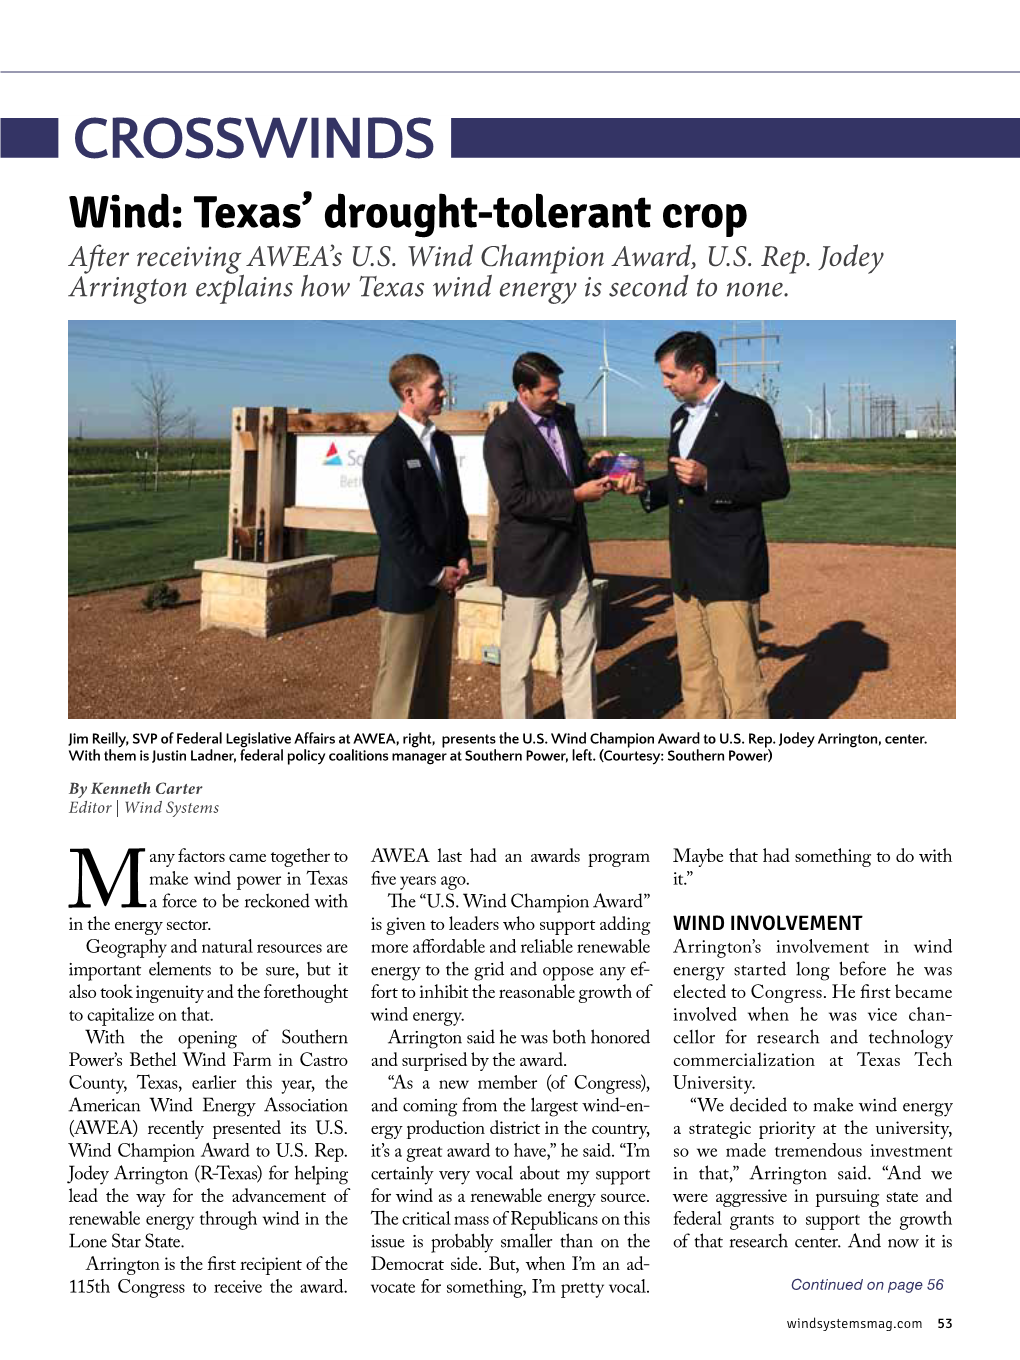 CROSSWINDS Wind: Texas’ Drought-Tolerant Crop After Receiving AWEA’S U.S